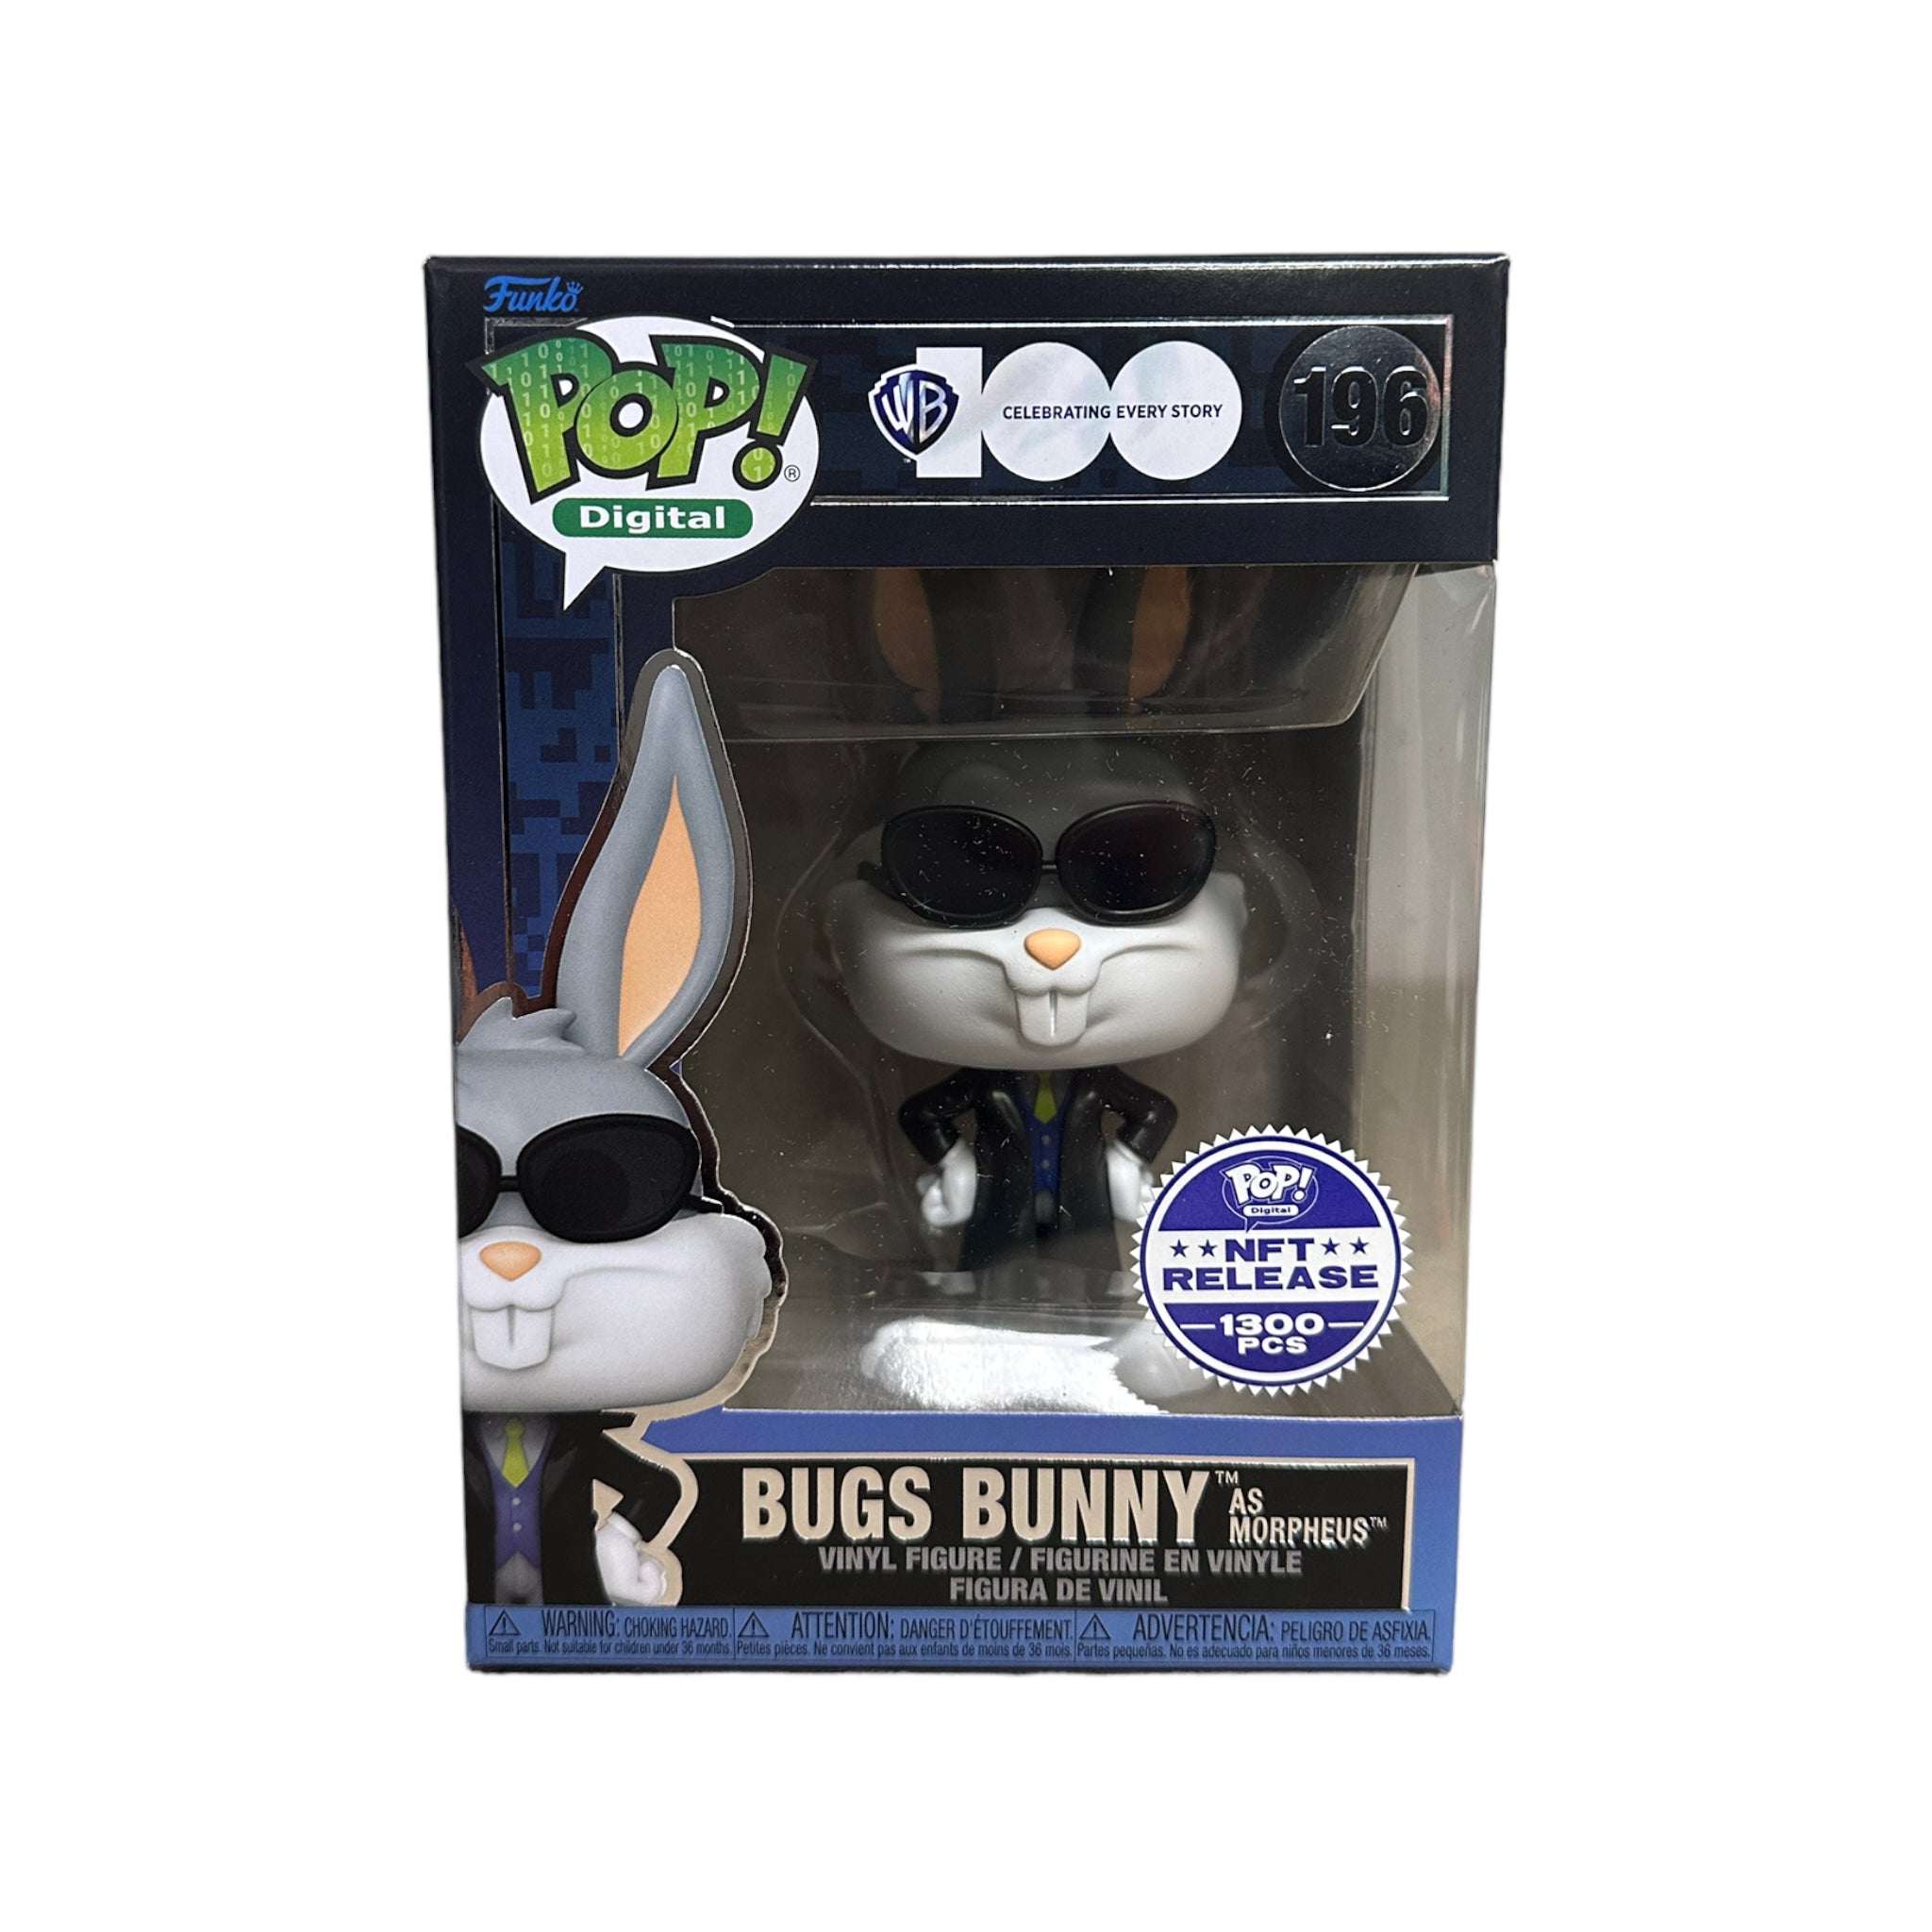 Bugs Bunny as Morpheus #196 Funko Pop! - WB 100 - NFT Release Exclusive LE1300 Pcs - Condition 9.5/10